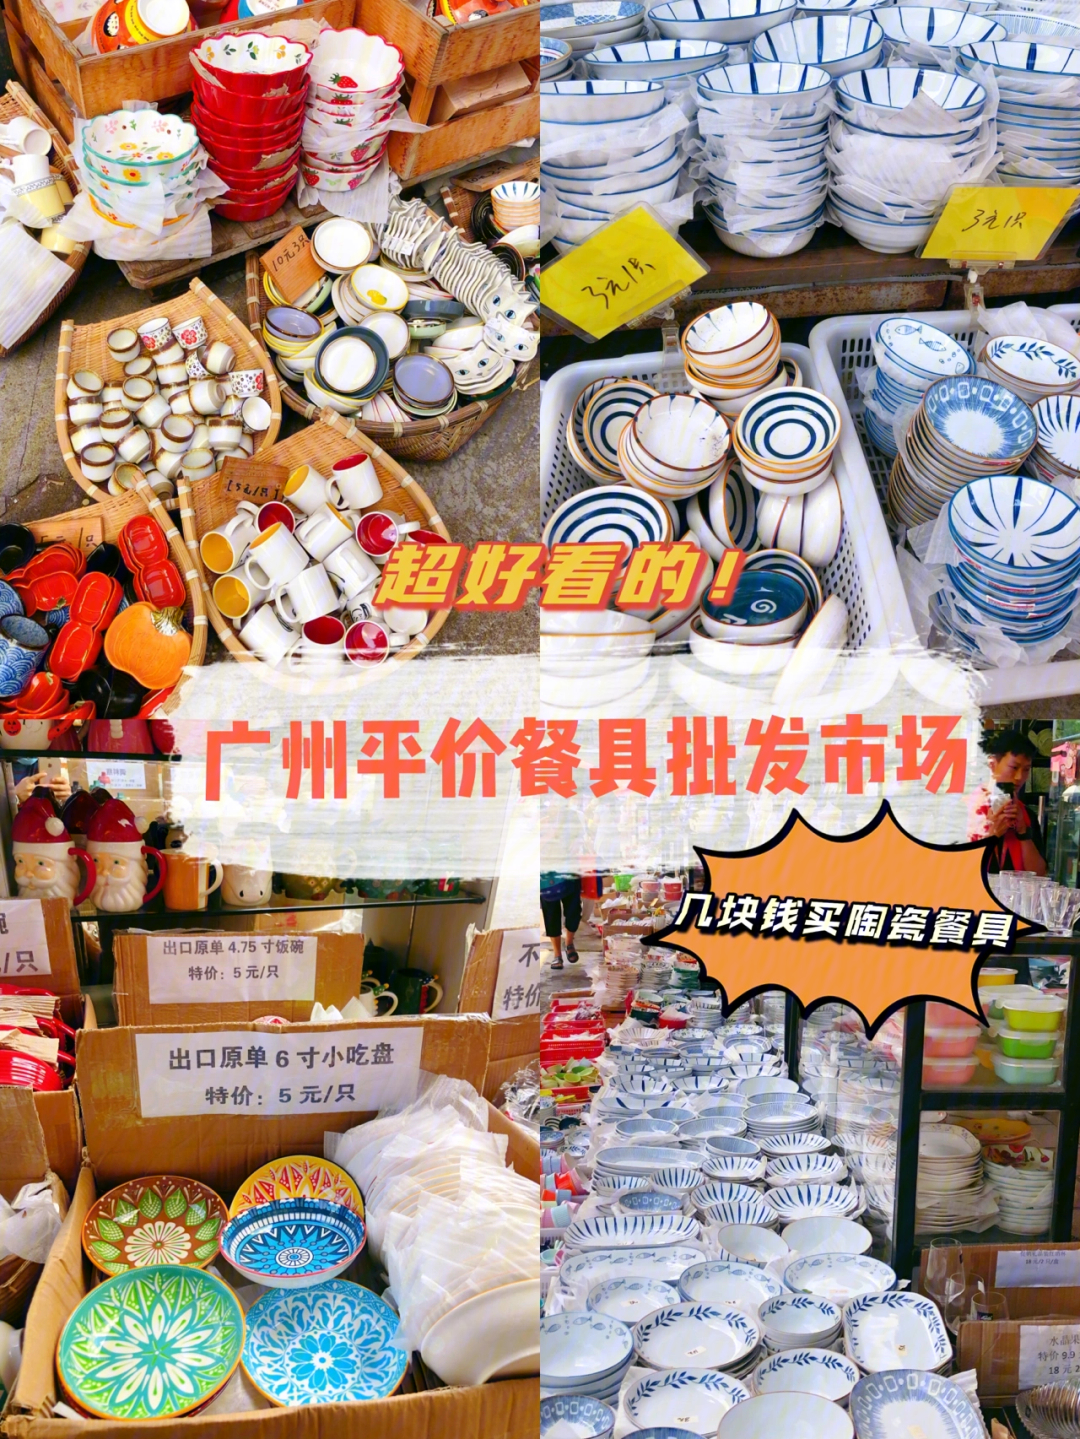 广州南泰批发市场10元内平价陶瓷餐具